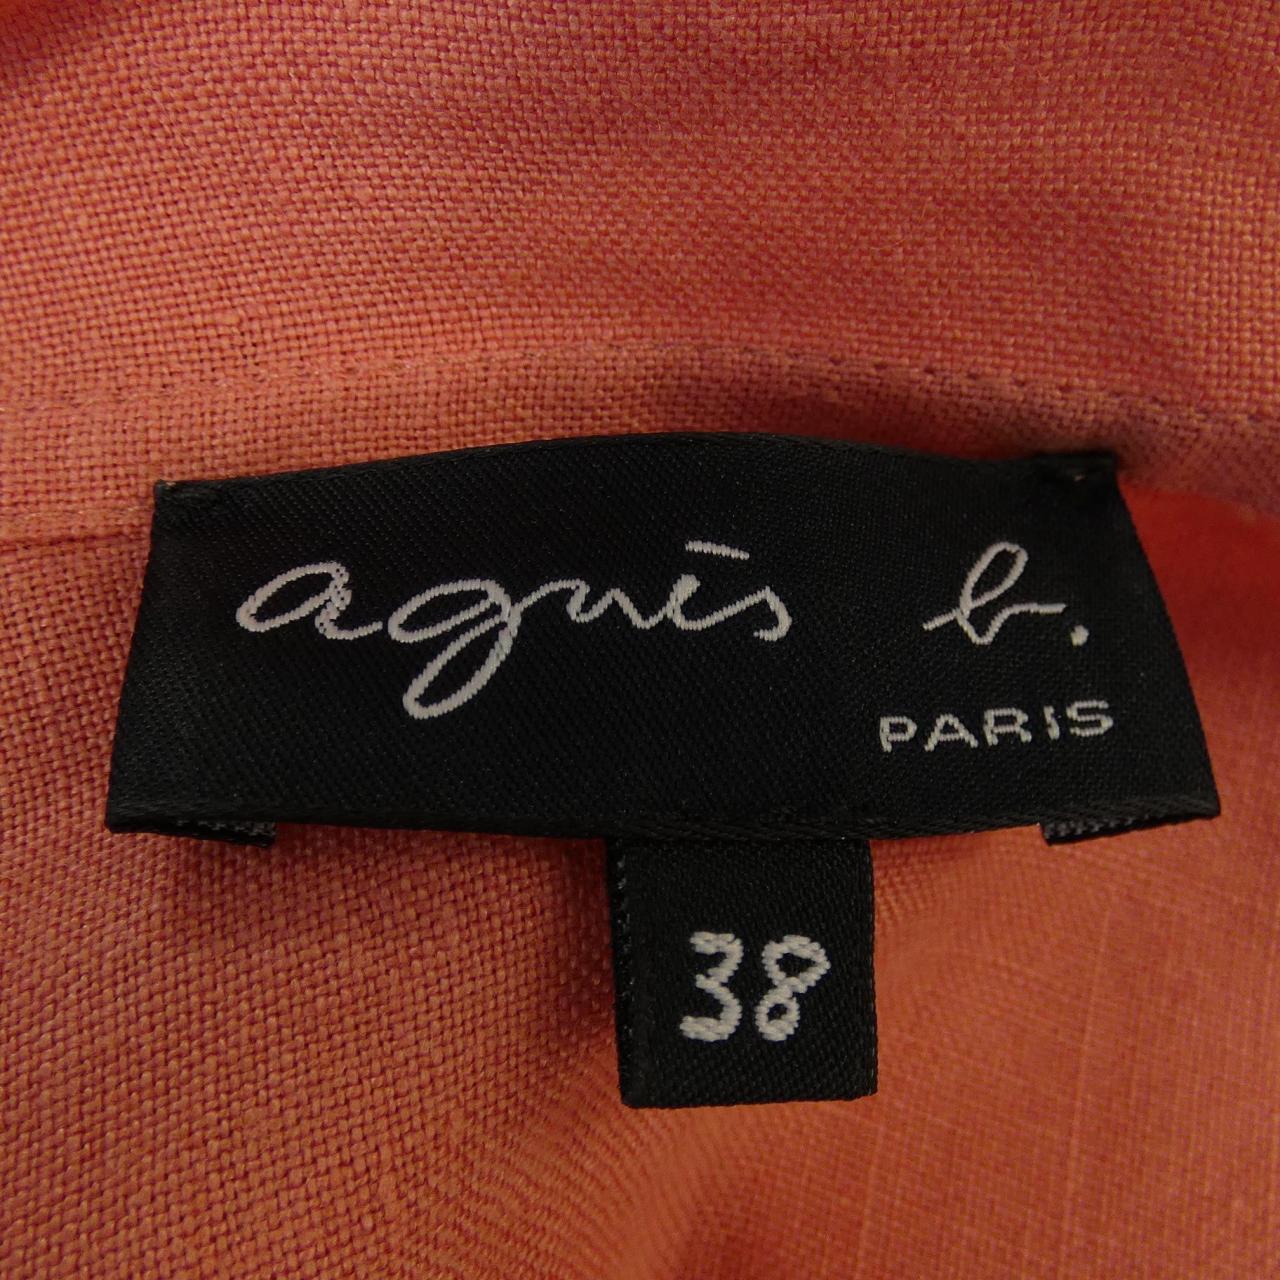 Agnes.b S/S shirt